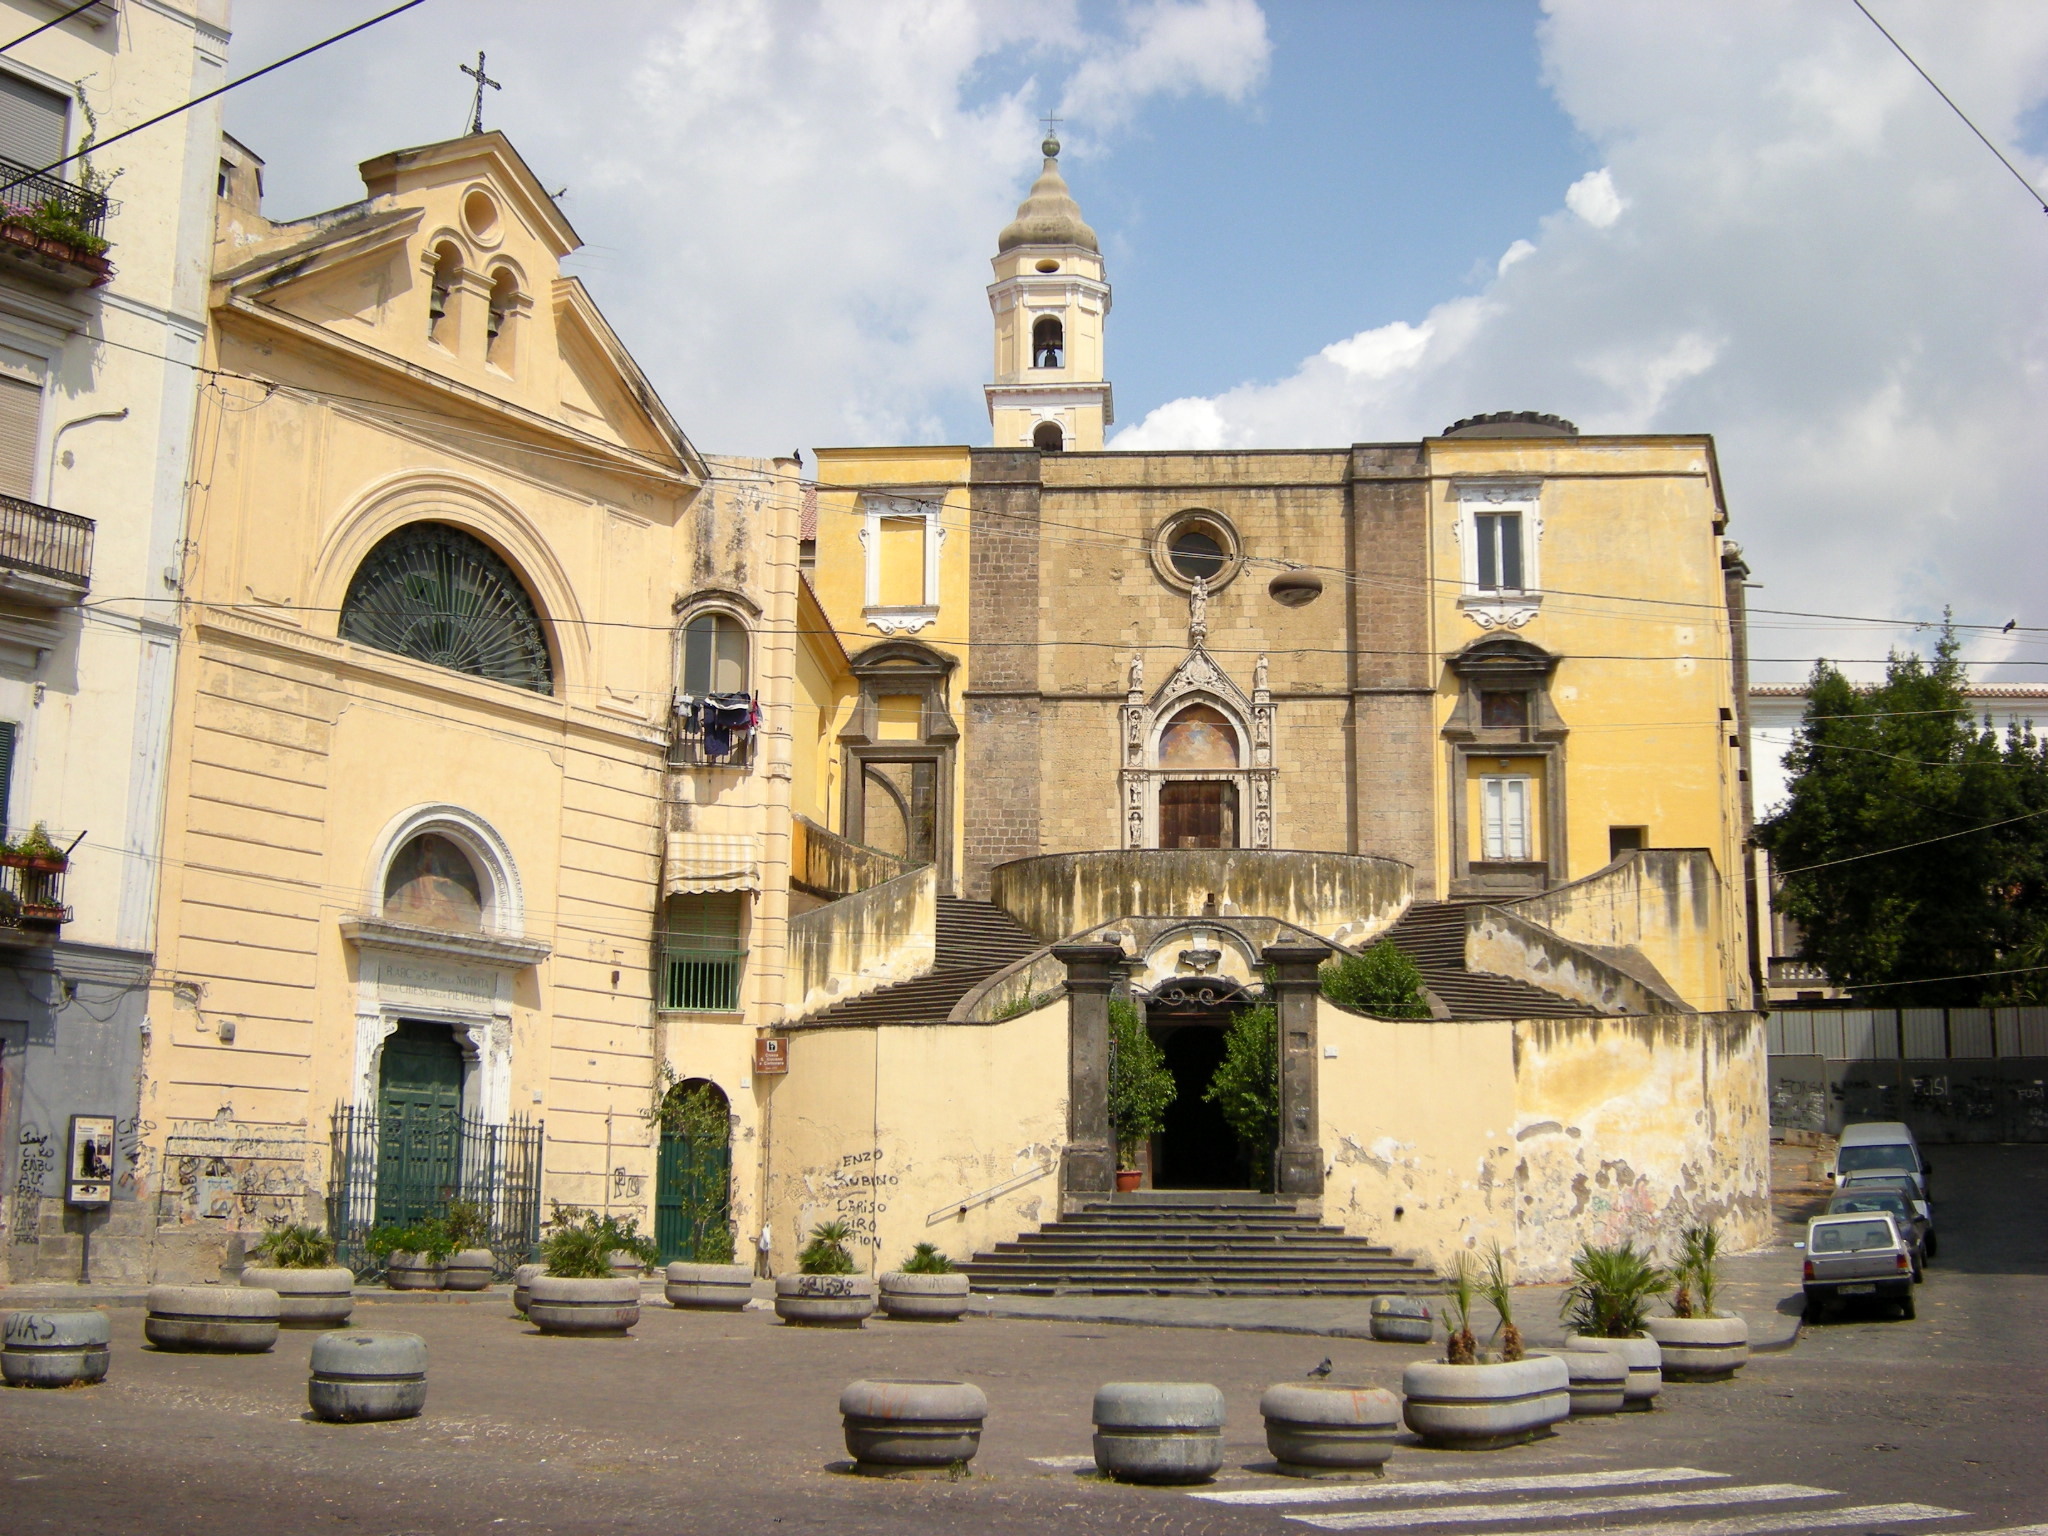 Igreja de San Giovanni in Carbonara, reabrindo após uma parada de 18 meses